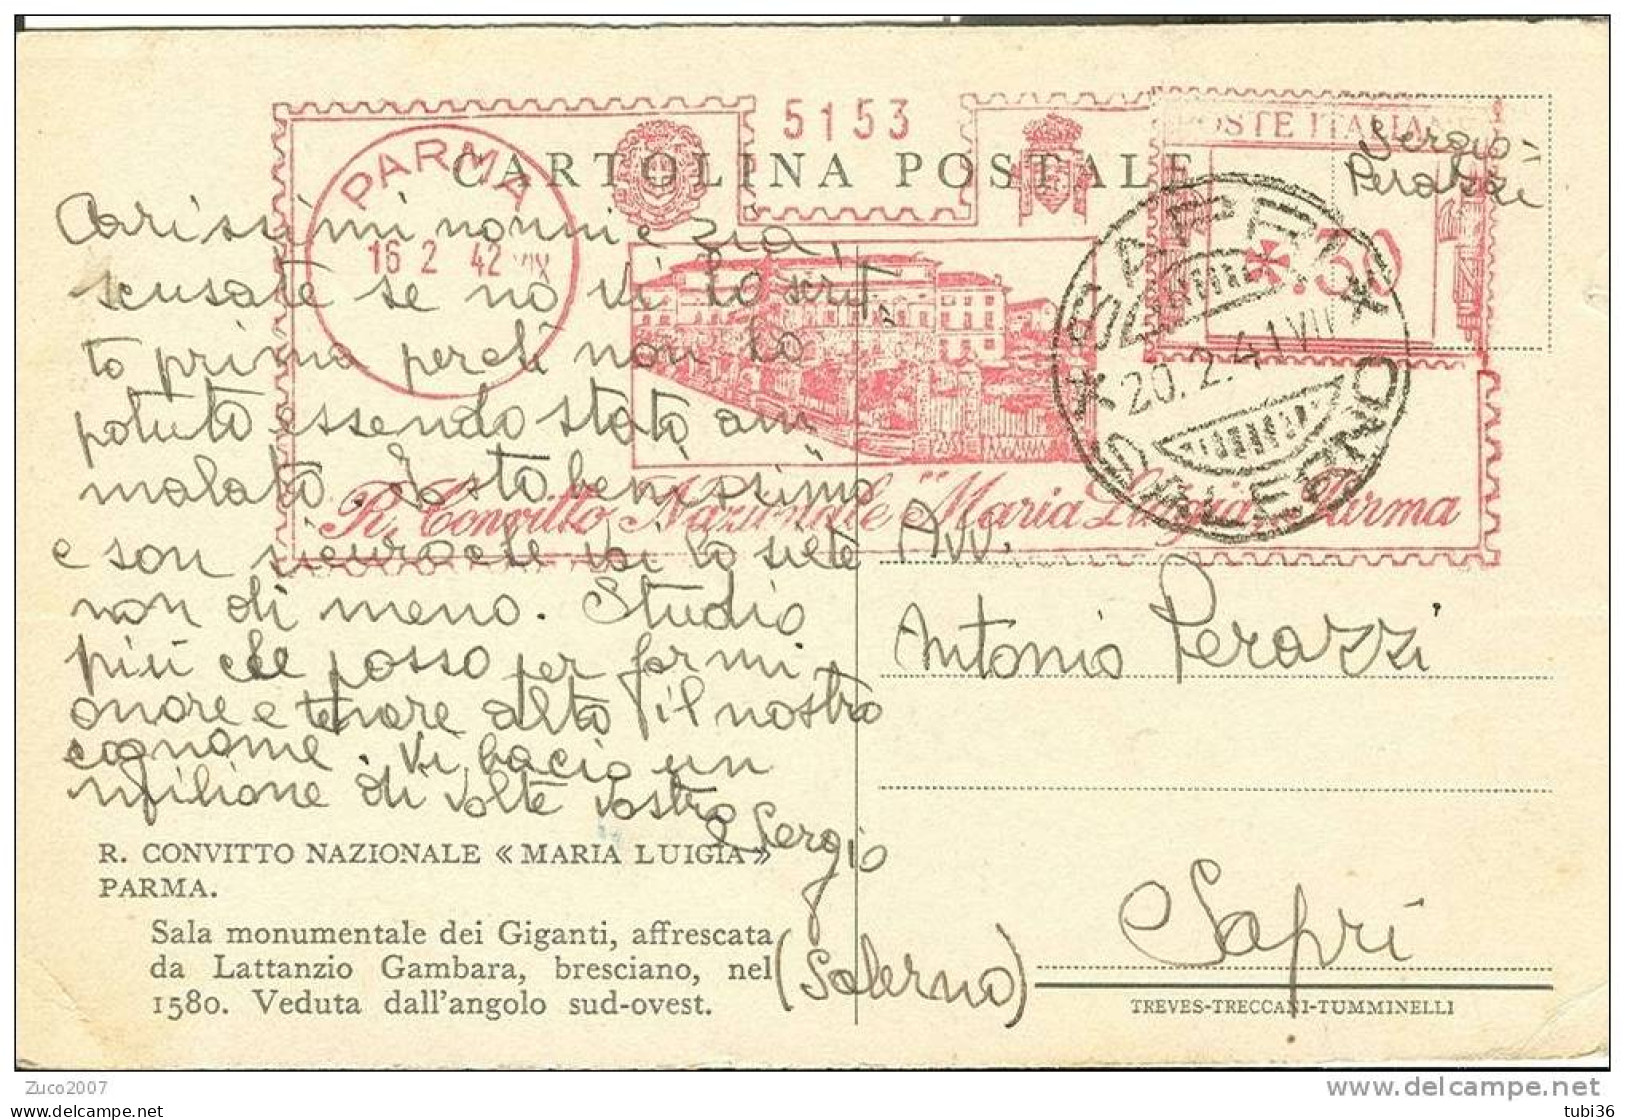 R. CONVITTO NAZIONALE MARIA LUIGIA PARMA - VIAGGIATO 1942 - TIMBRO ROSSO  16/2/1942 DA PARMA A SAPRI (SALERNO). - Publicité